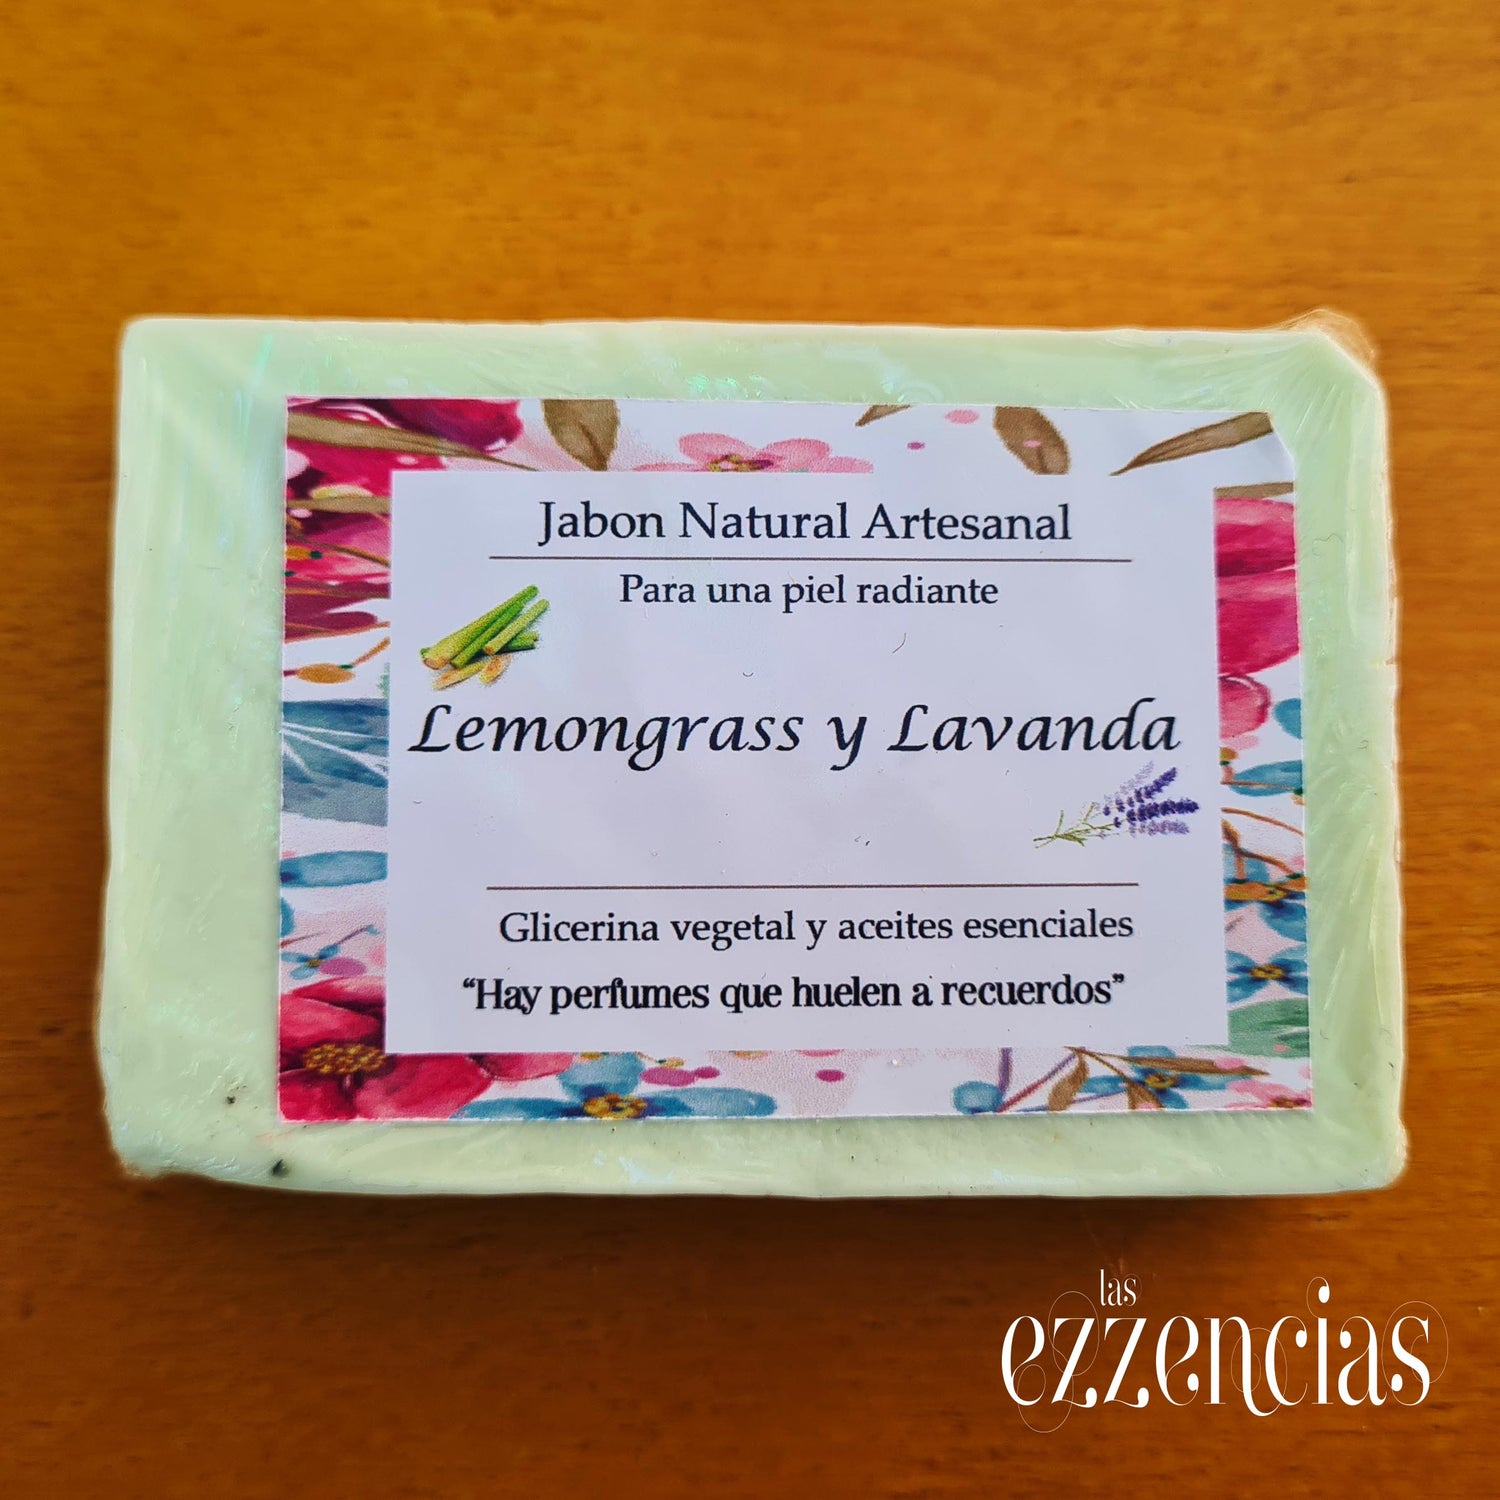 Jabón natural artesanal Lemongrass y Lavanda